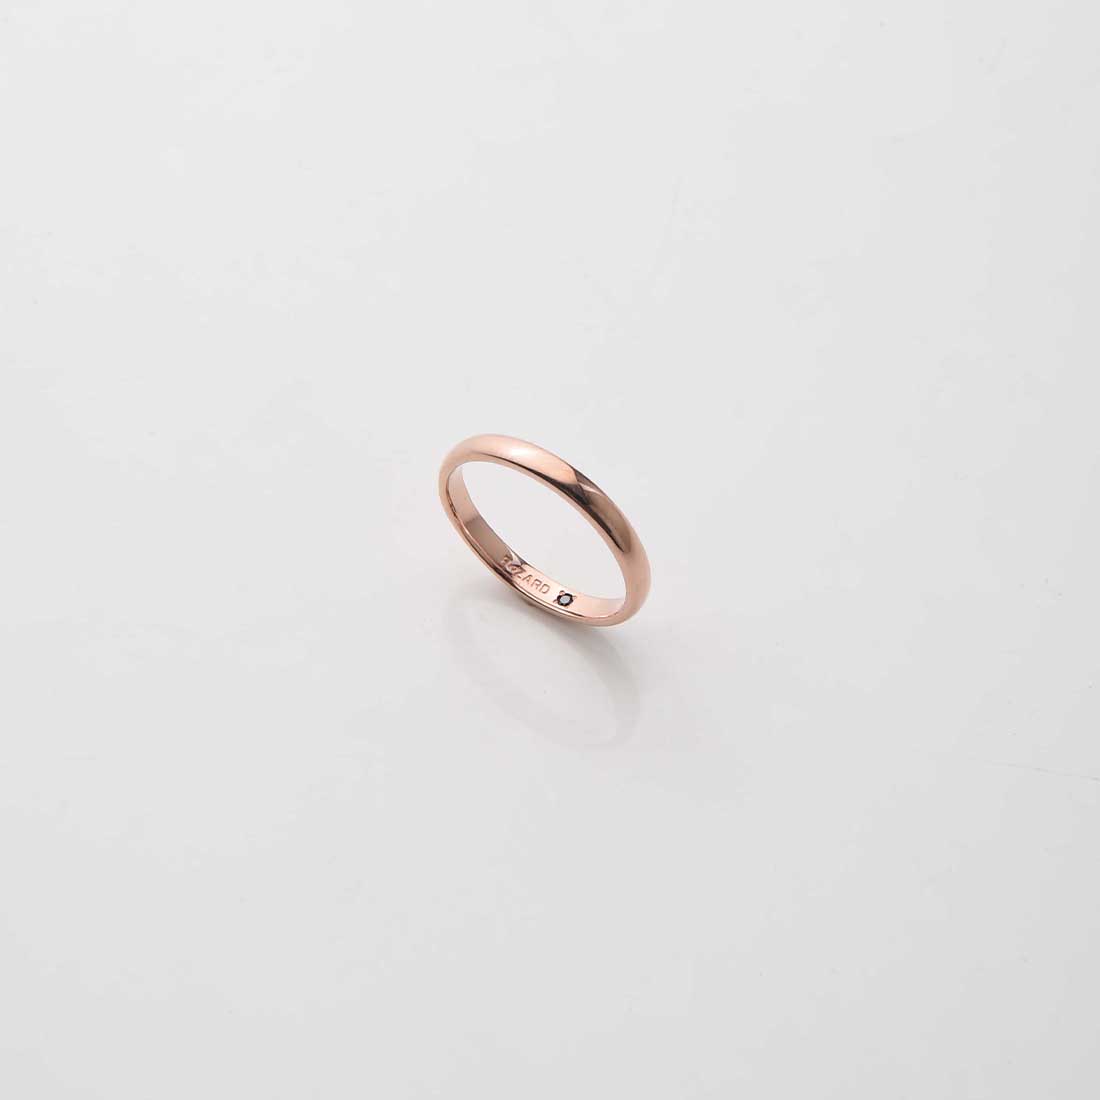 【ReZARD】Silver Ring(PINK GOLD)